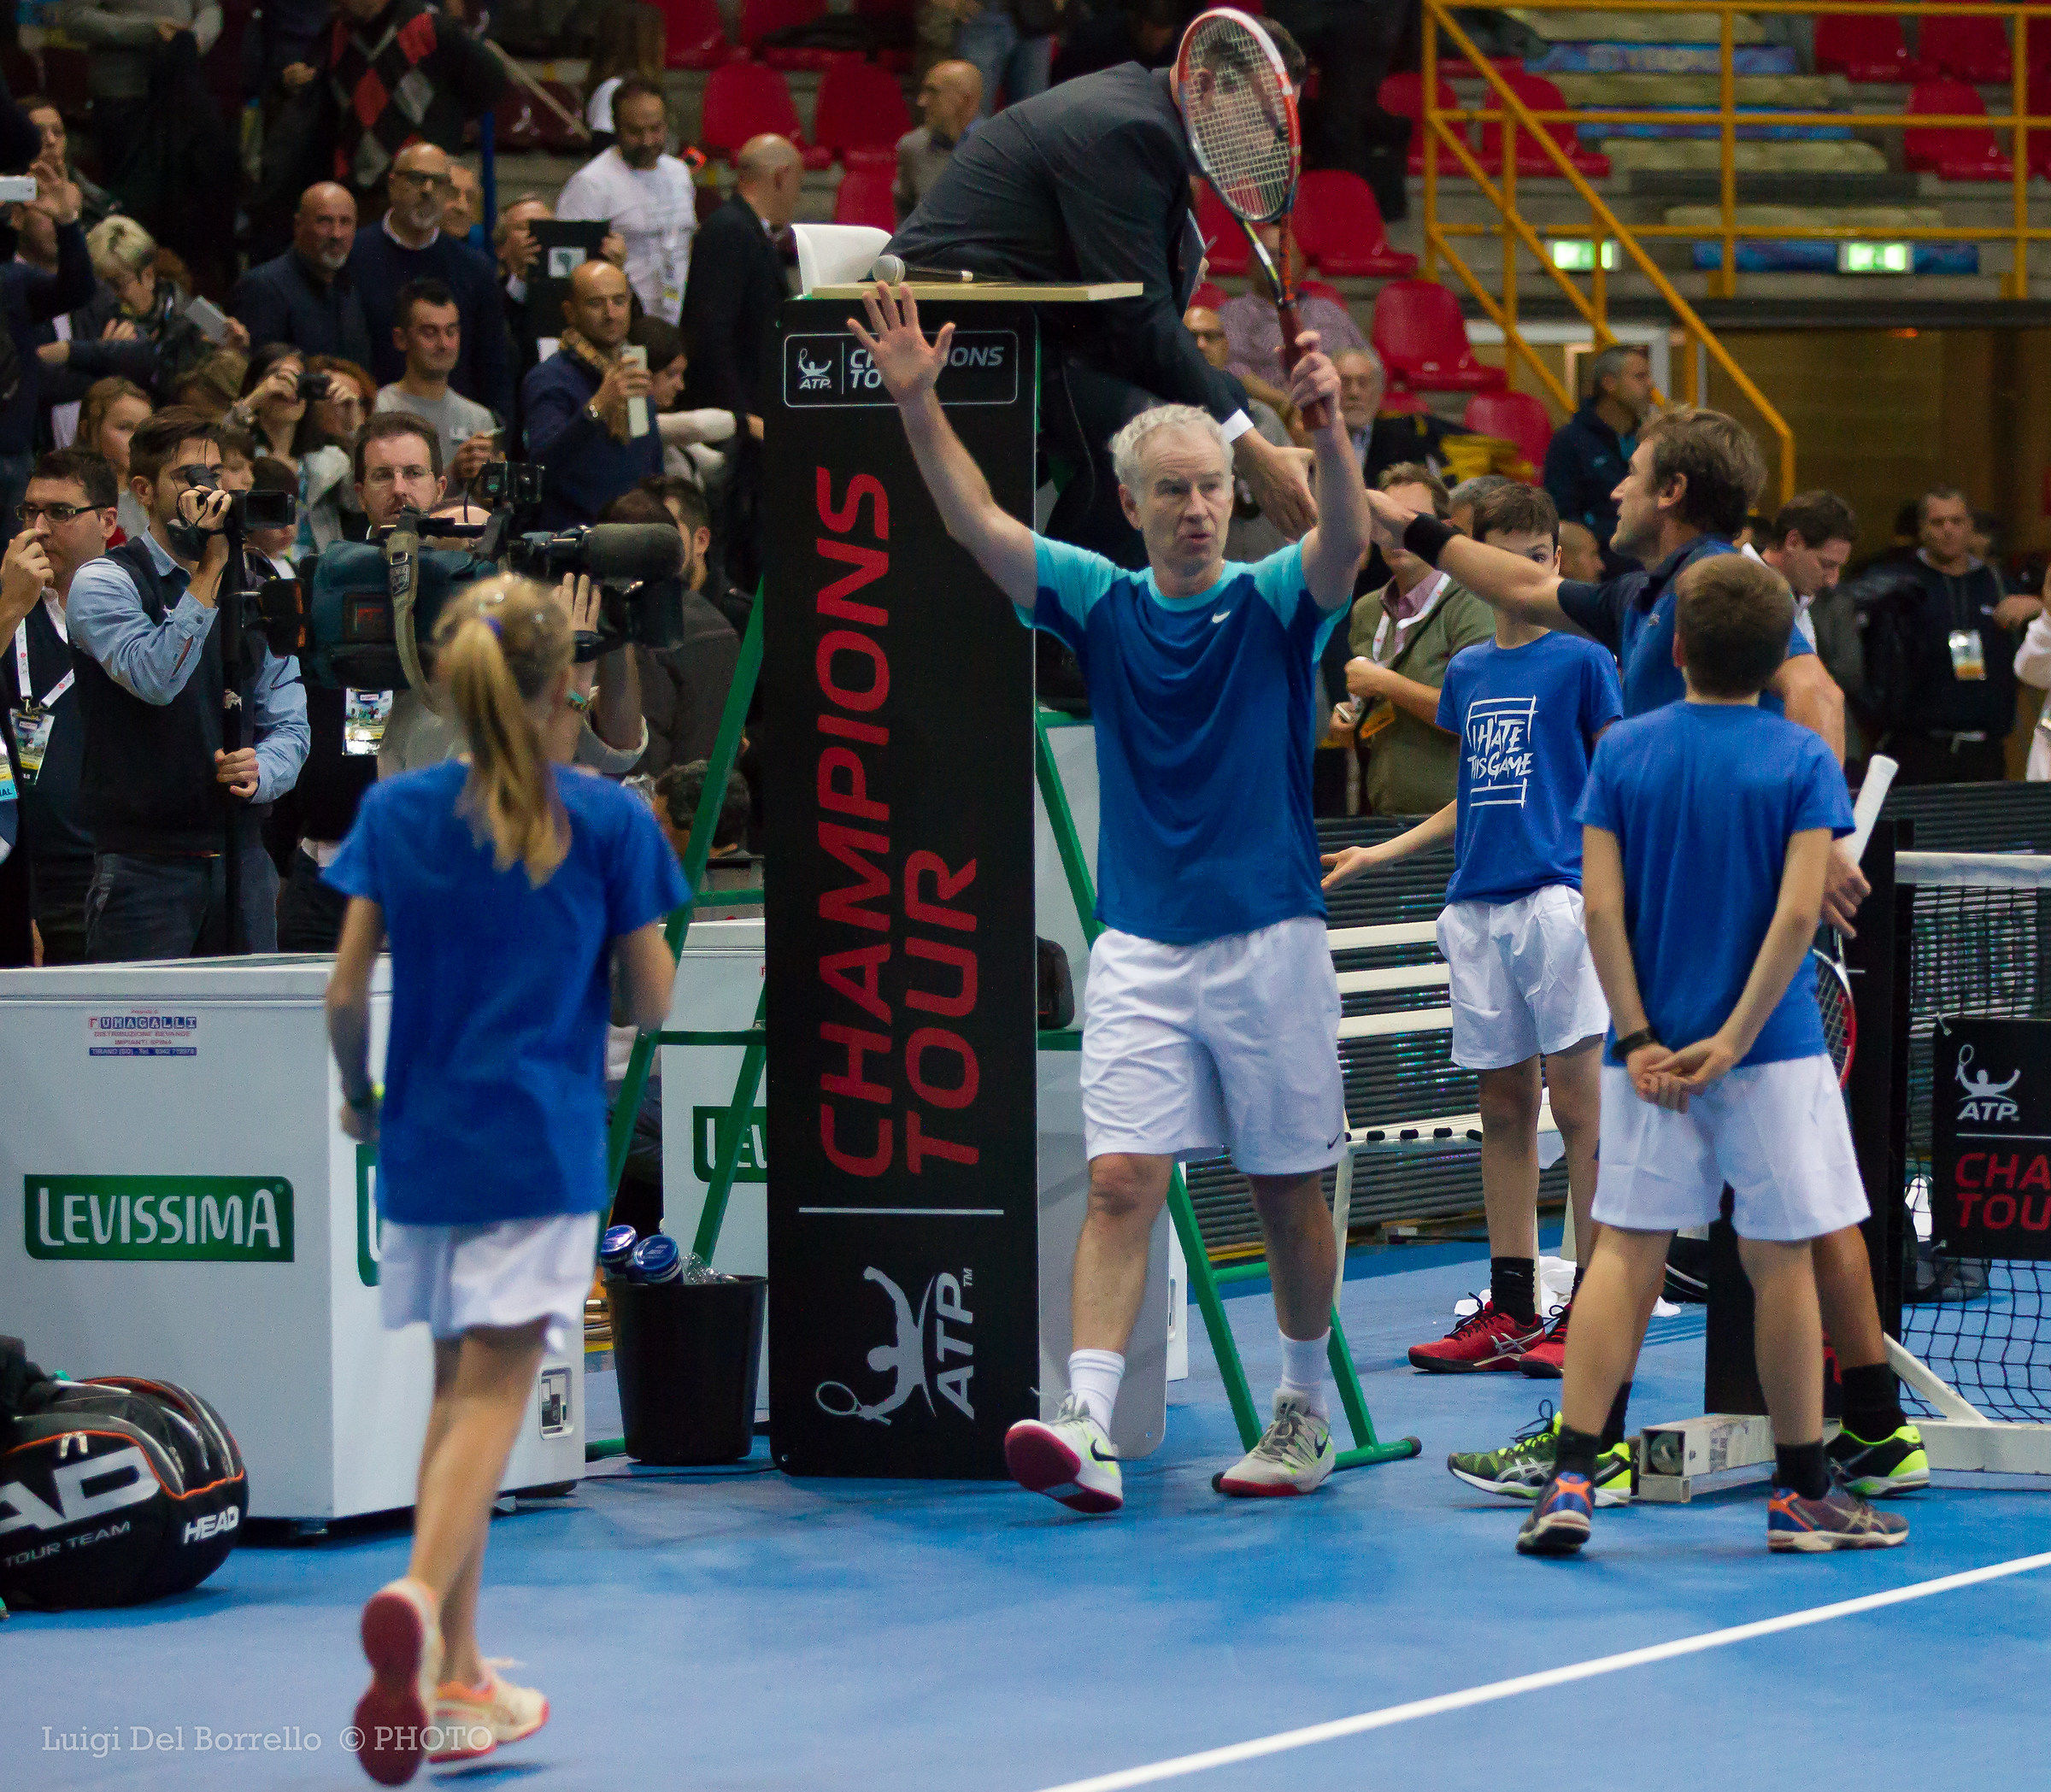 John McEnroe - Mats Wilander  Verona 20-11-2015...